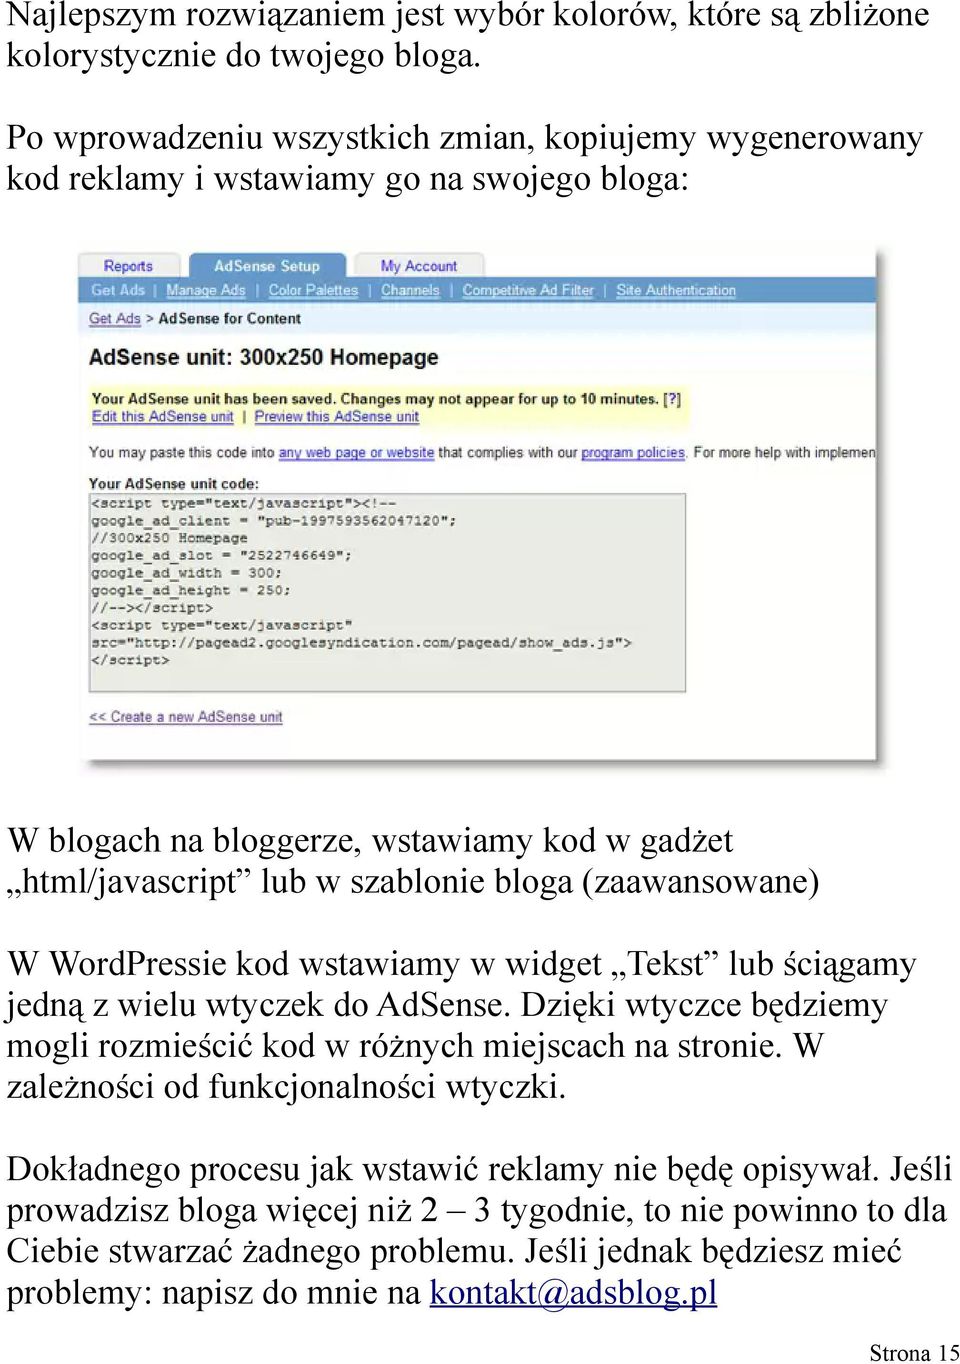 (zaawansowane) W WordPressie kod wstawiamy w widget Tekst lub ściągamy jedną z wielu wtyczek do AdSense. Dzięki wtyczce będziemy mogli rozmieścić kod w różnych miejscach na stronie.